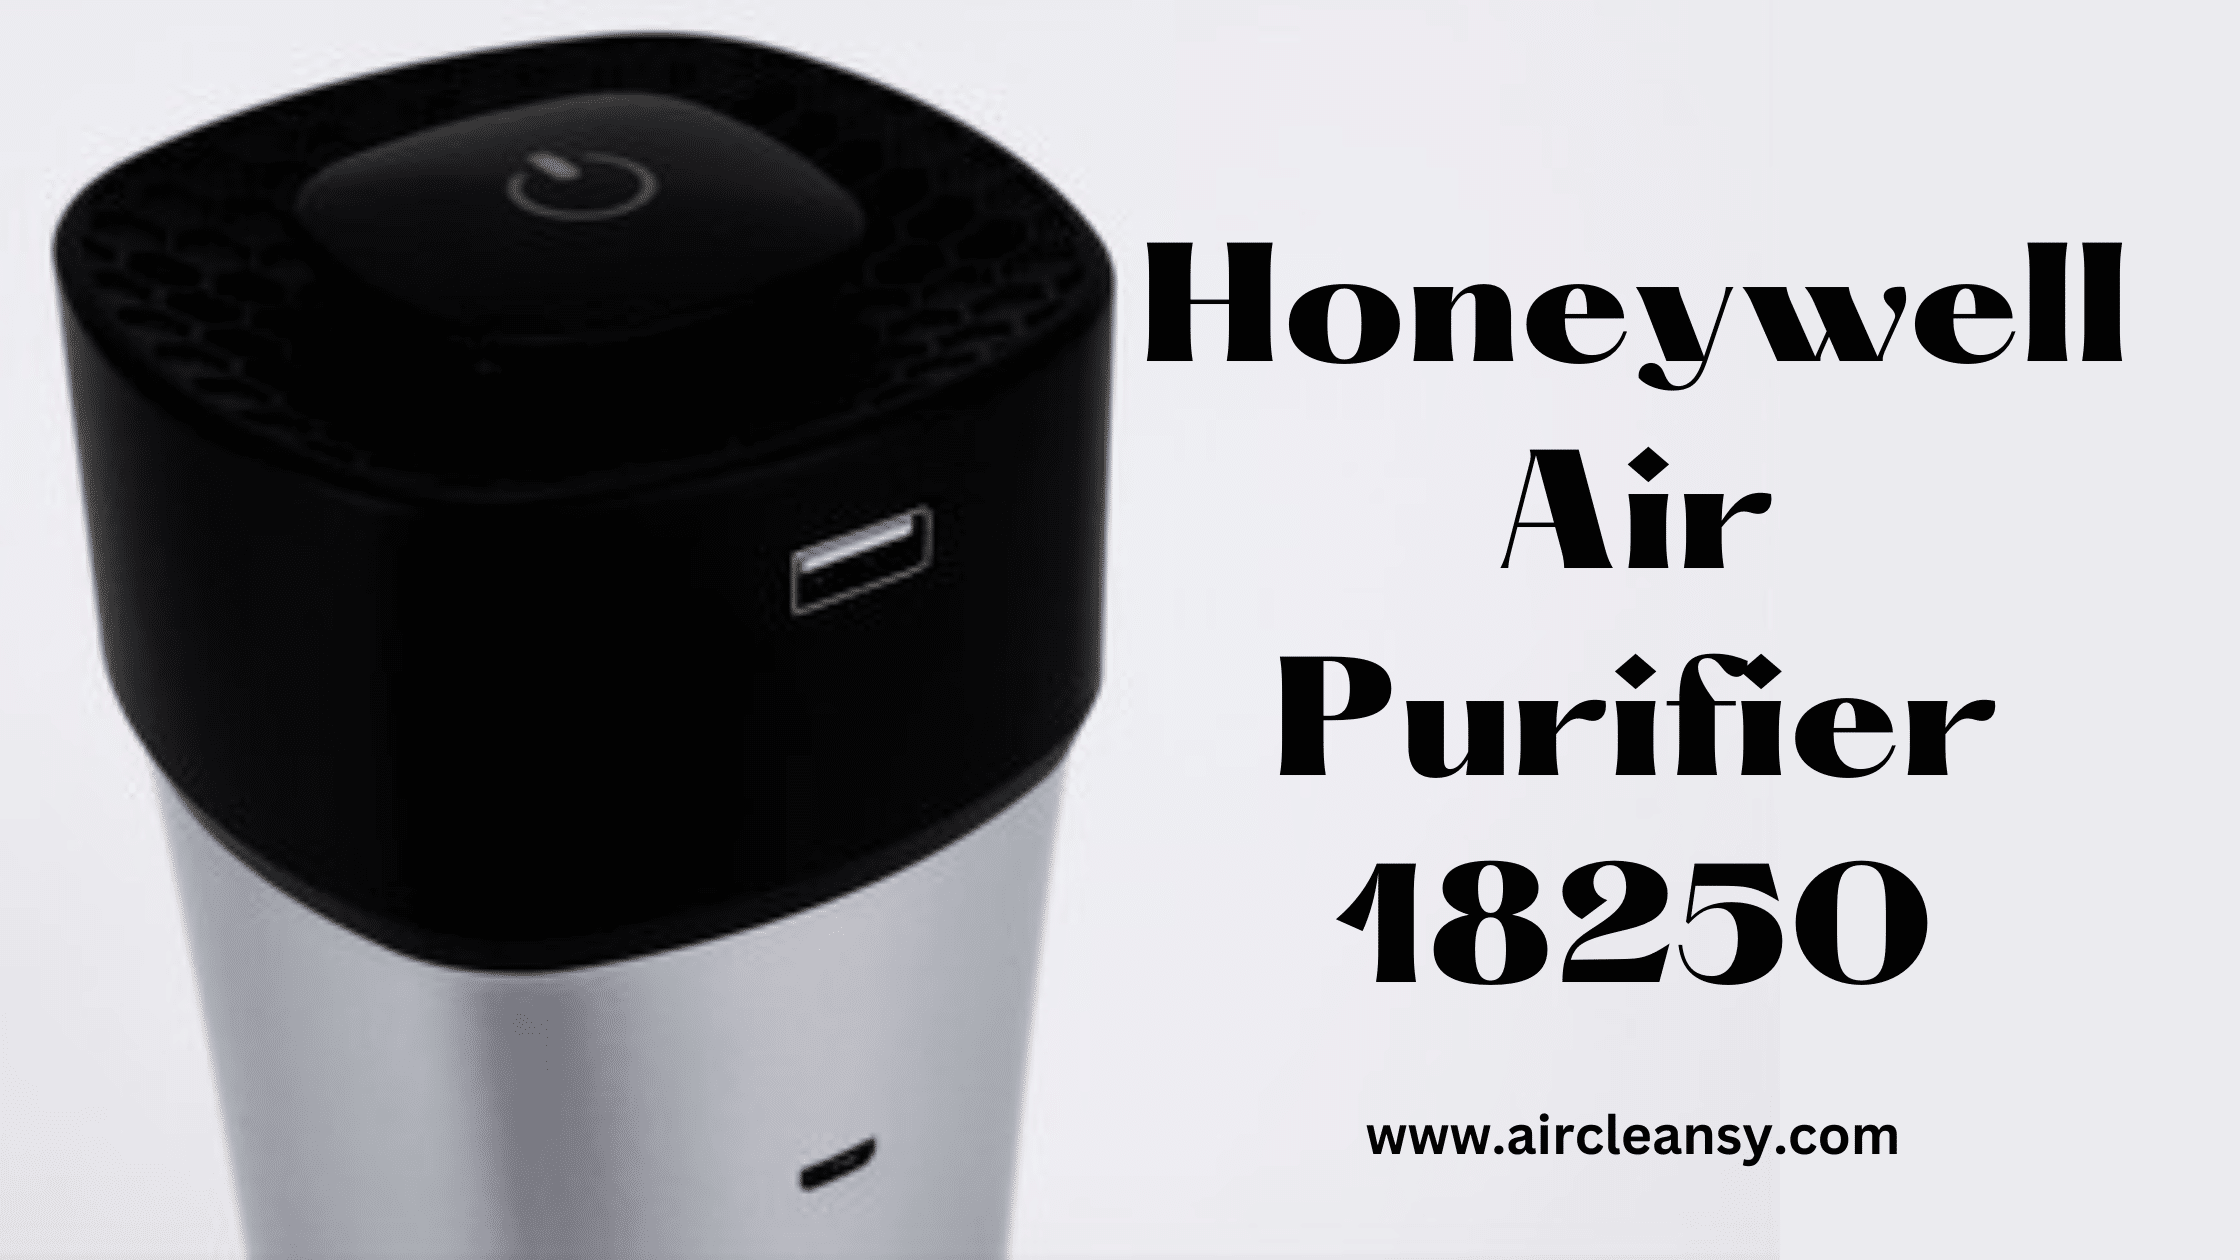 Honeywell Air Purifier 18250